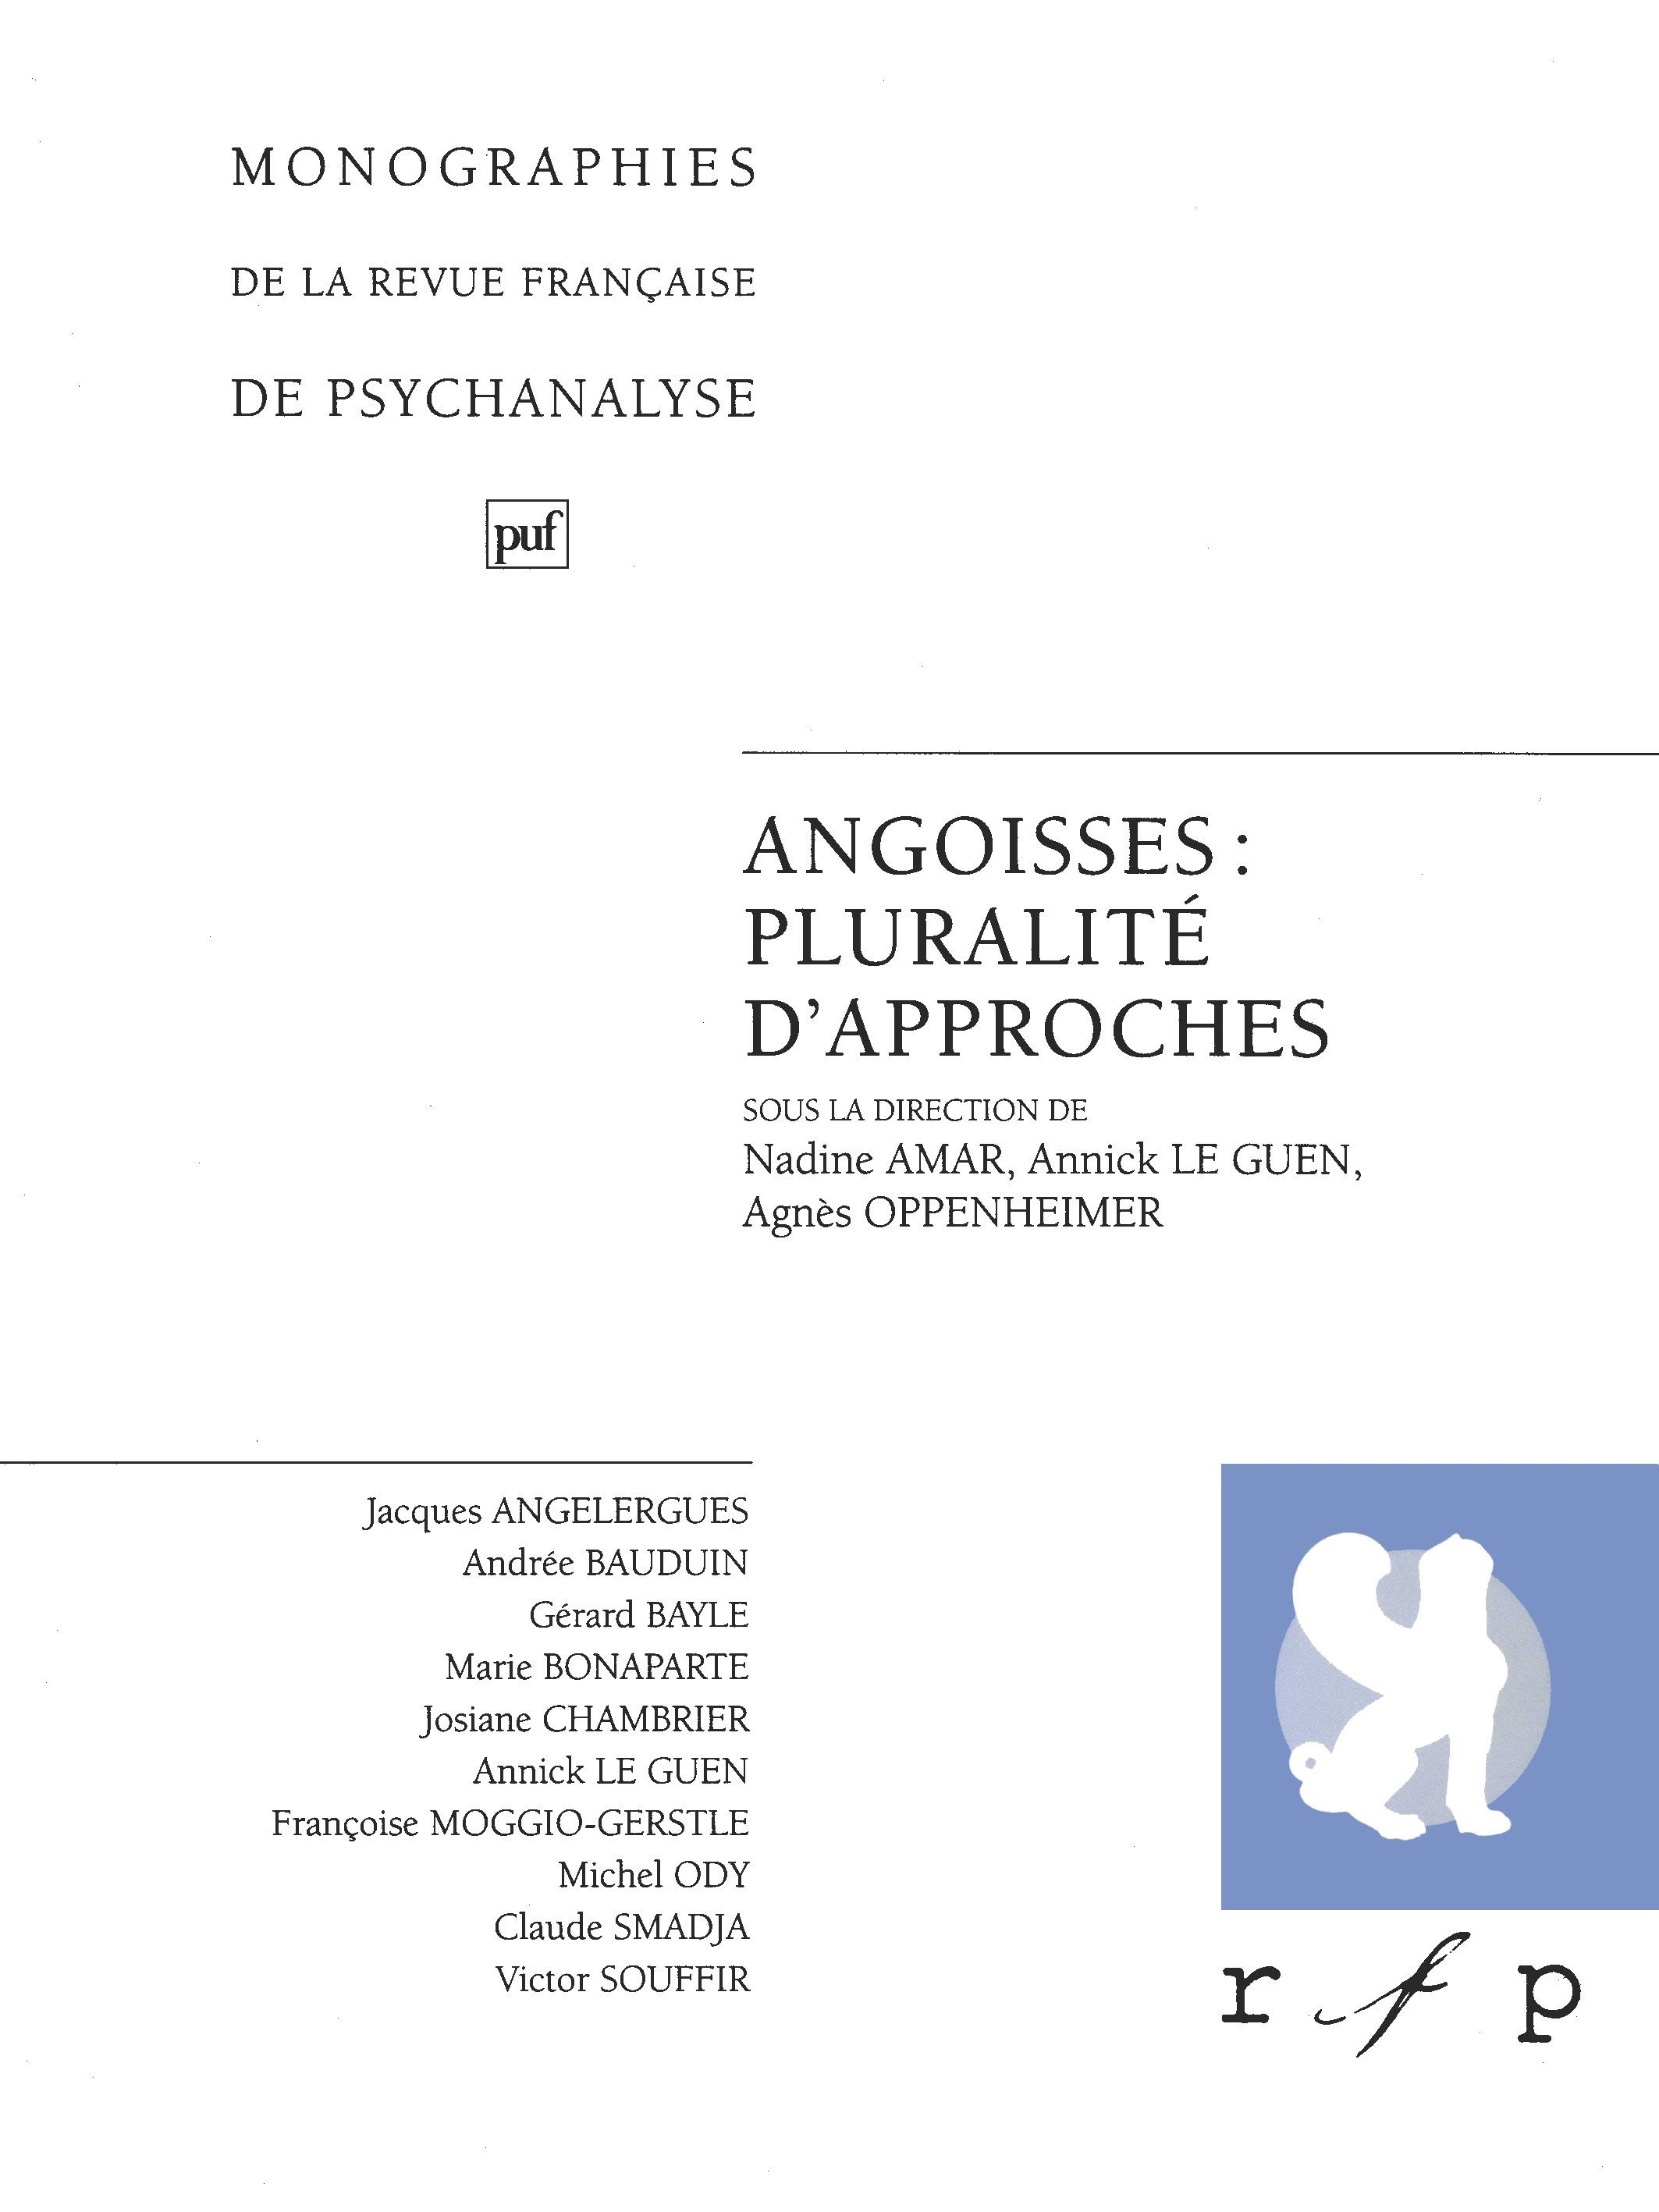 Angoisses : pluralité d'approches. Volume 2 De Nadine Amar, Annick le Guen et Agnès Oppenheimer - Presses Universitaires de France